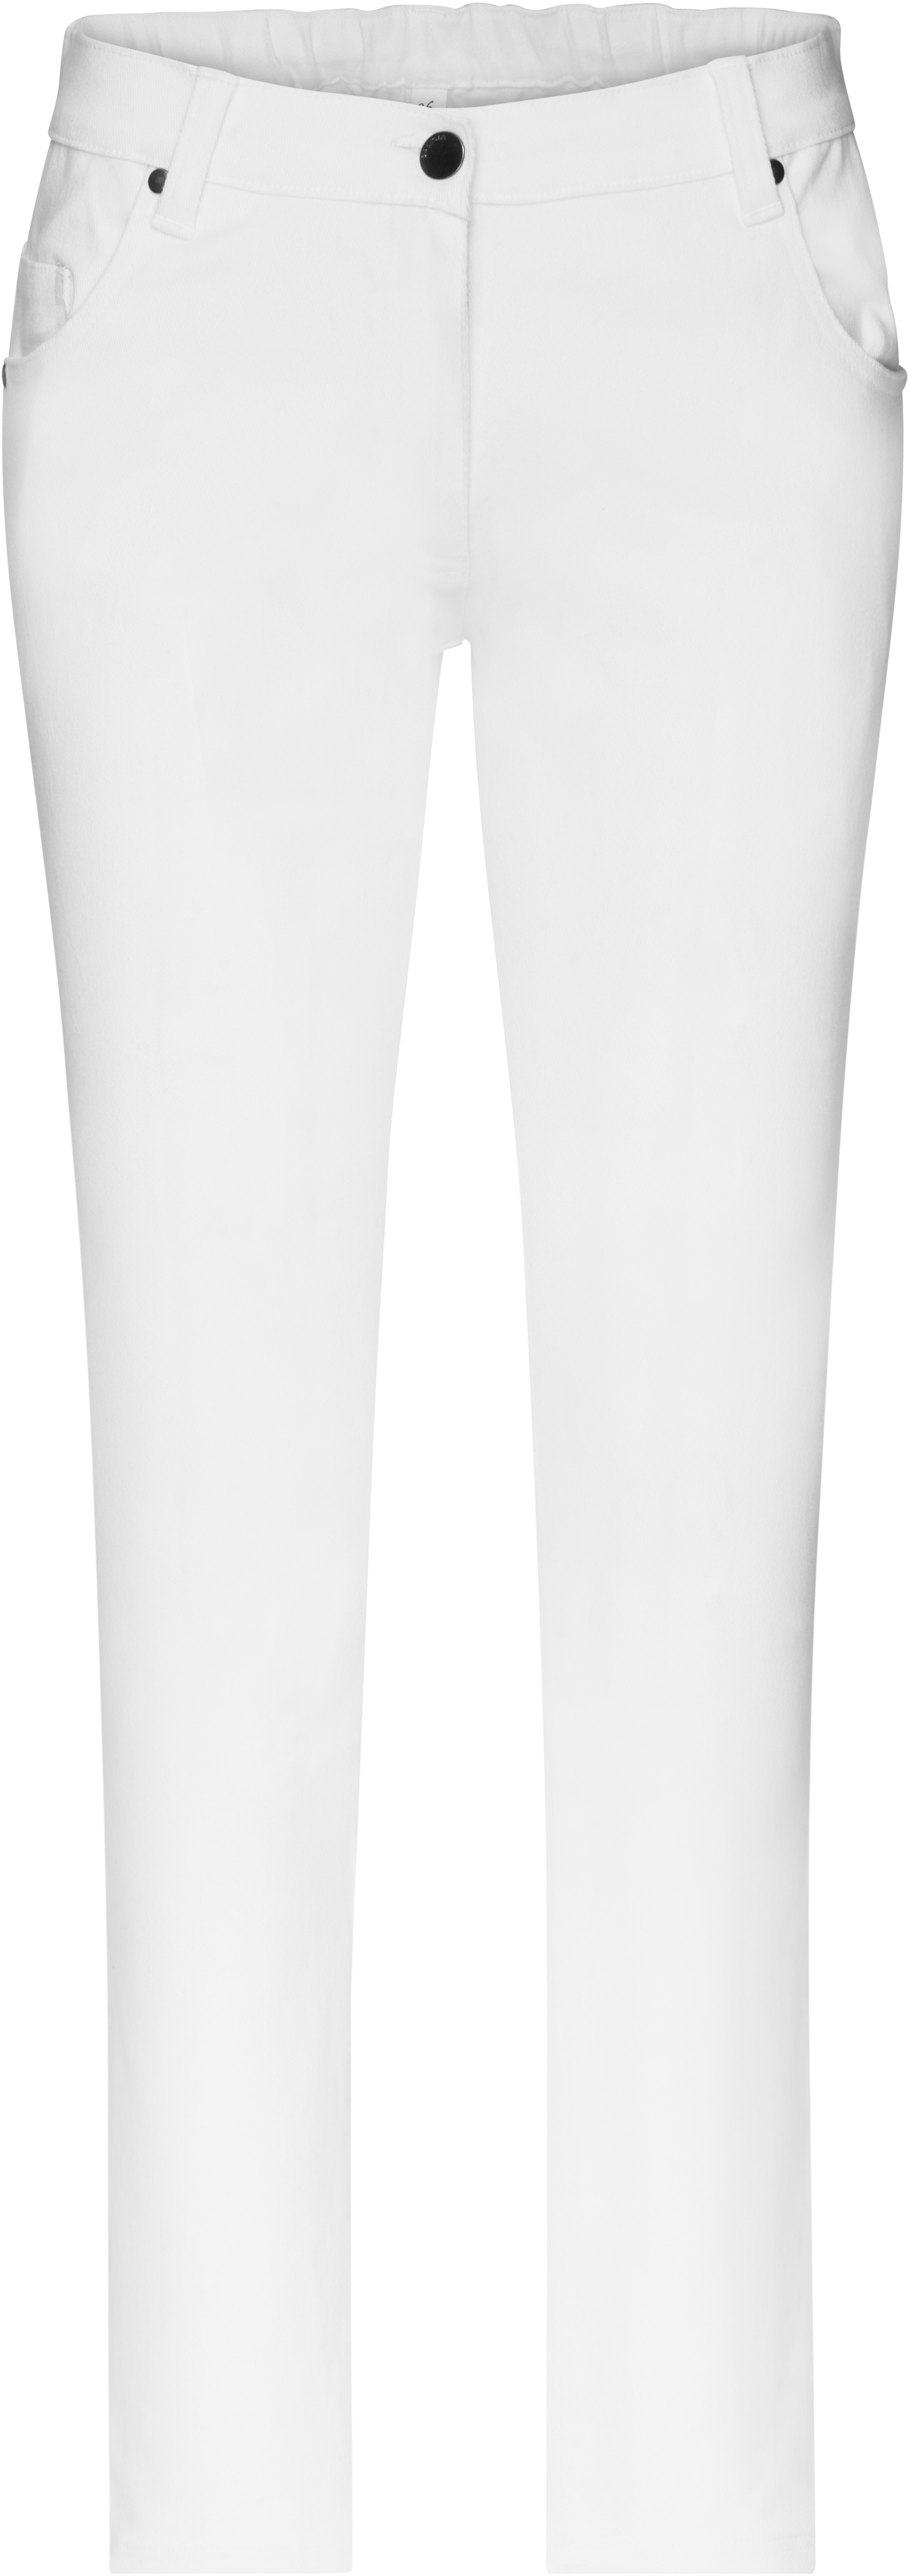 Dámské elastické kalhoty JN 3001 Barva: bílá, Velikost: 48